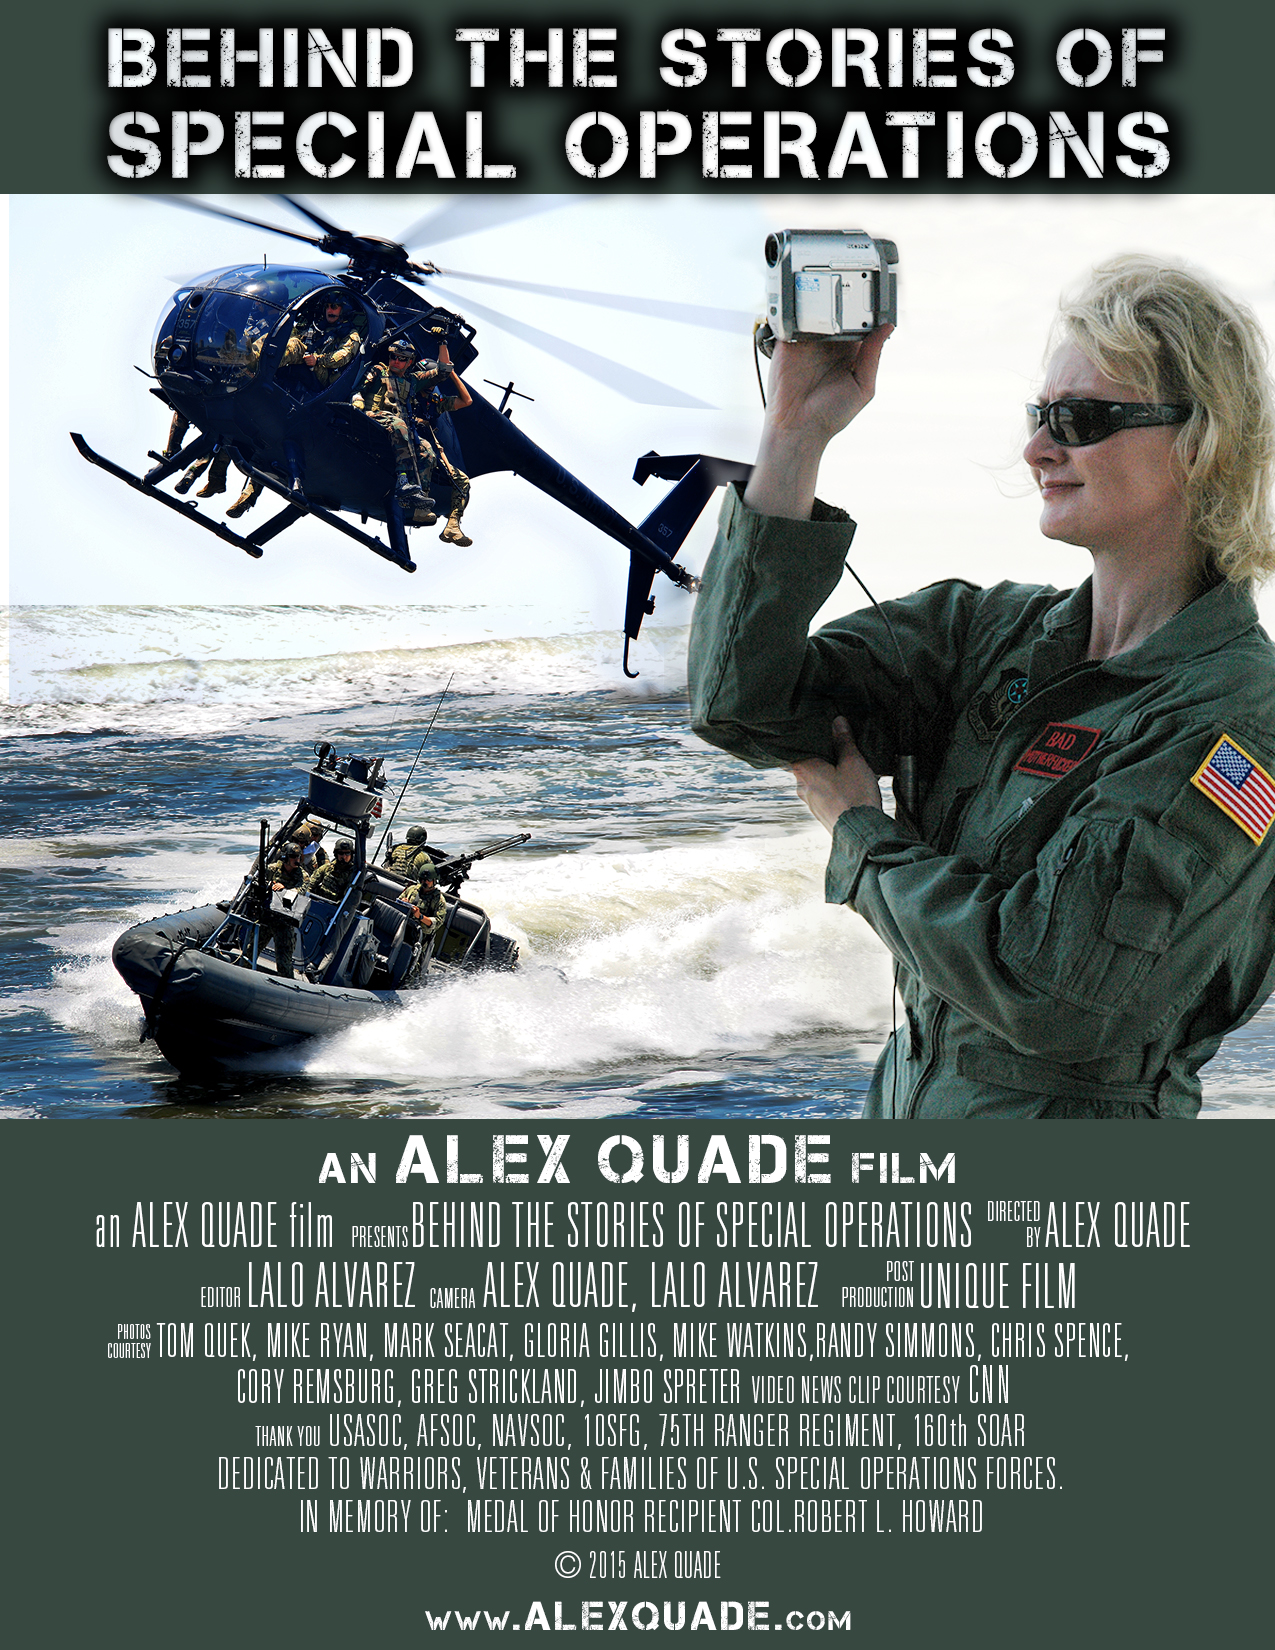 Alex Quade Films presents: 